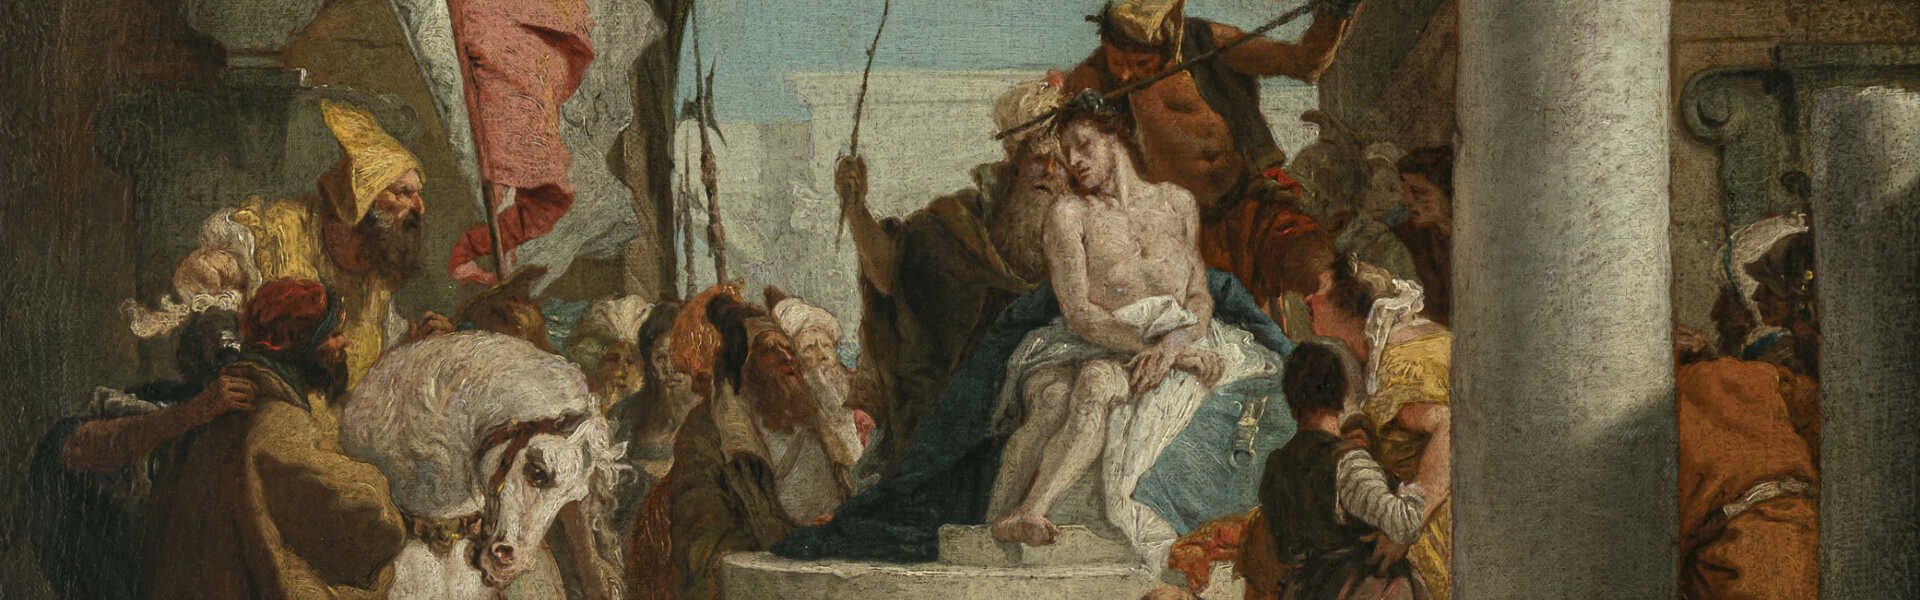 Giovanni Battista Tiepolo, Werkstatt. Christ crowned with thorns